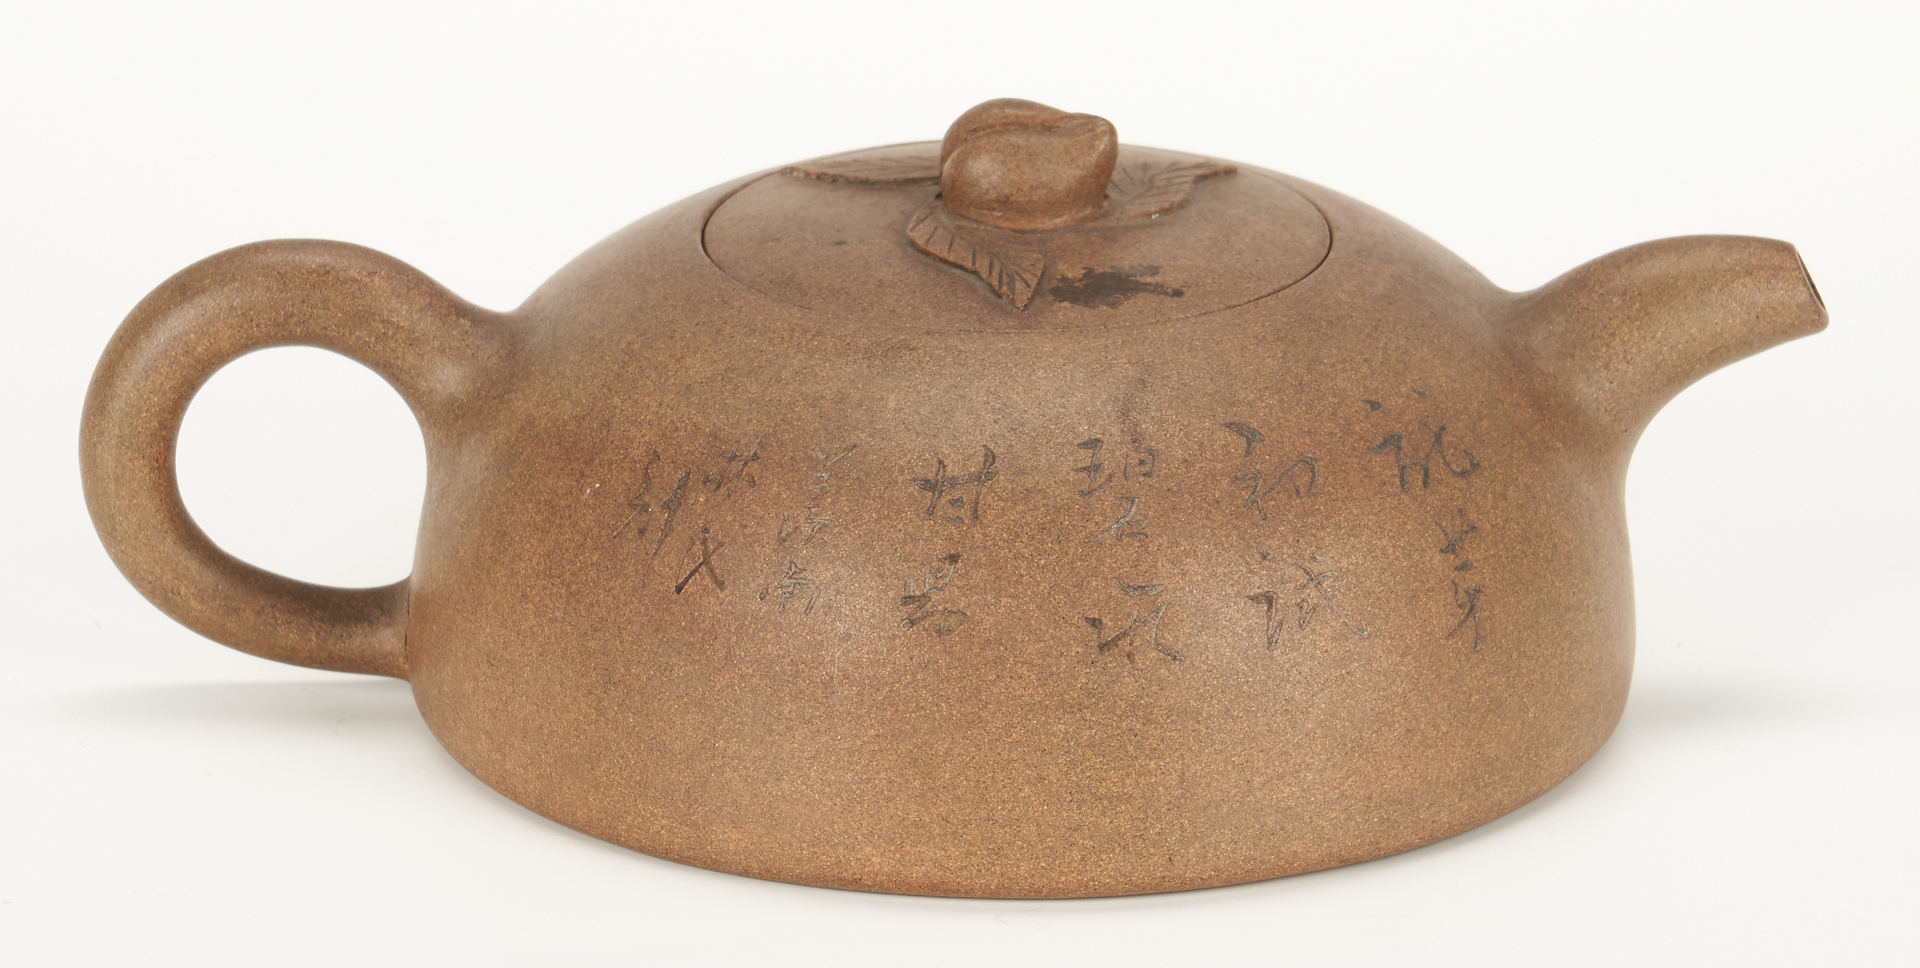 Lot 4: Chinese Yixing Teapot, Cheng Shouzhen